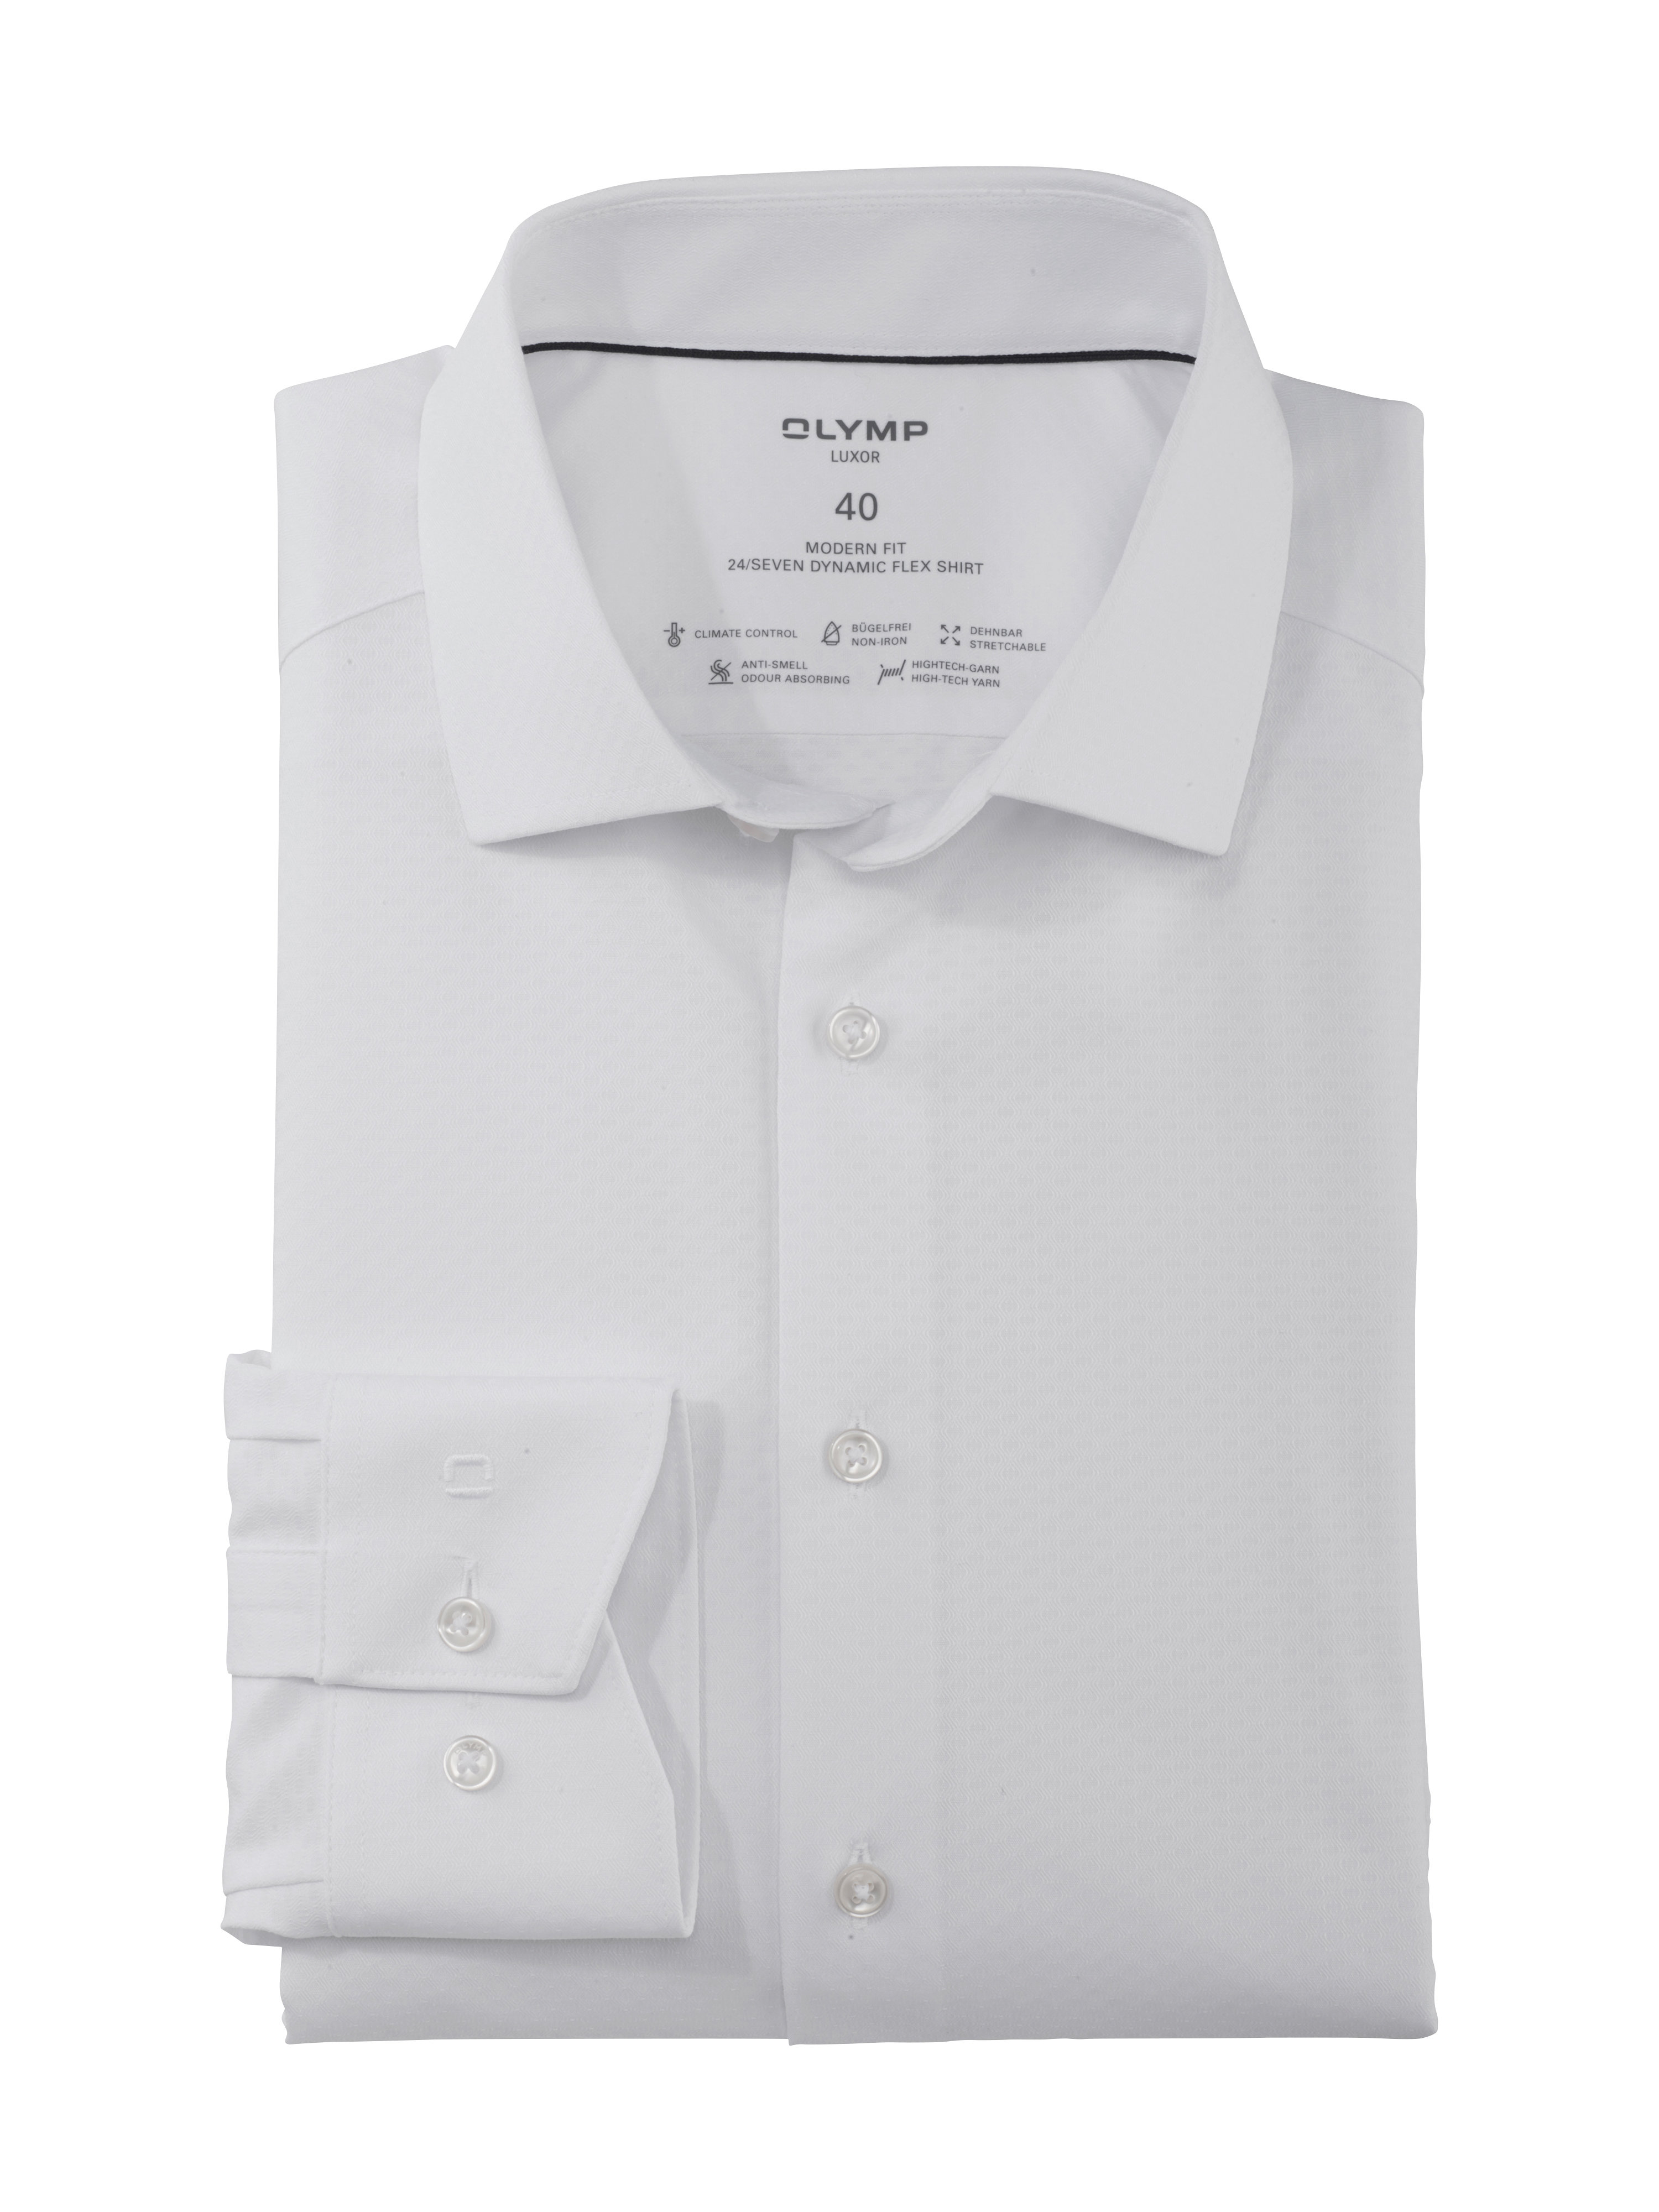 OLYMP Luxor 24/Seven Modern Fit společenská košile 125254 00 Bílá 40